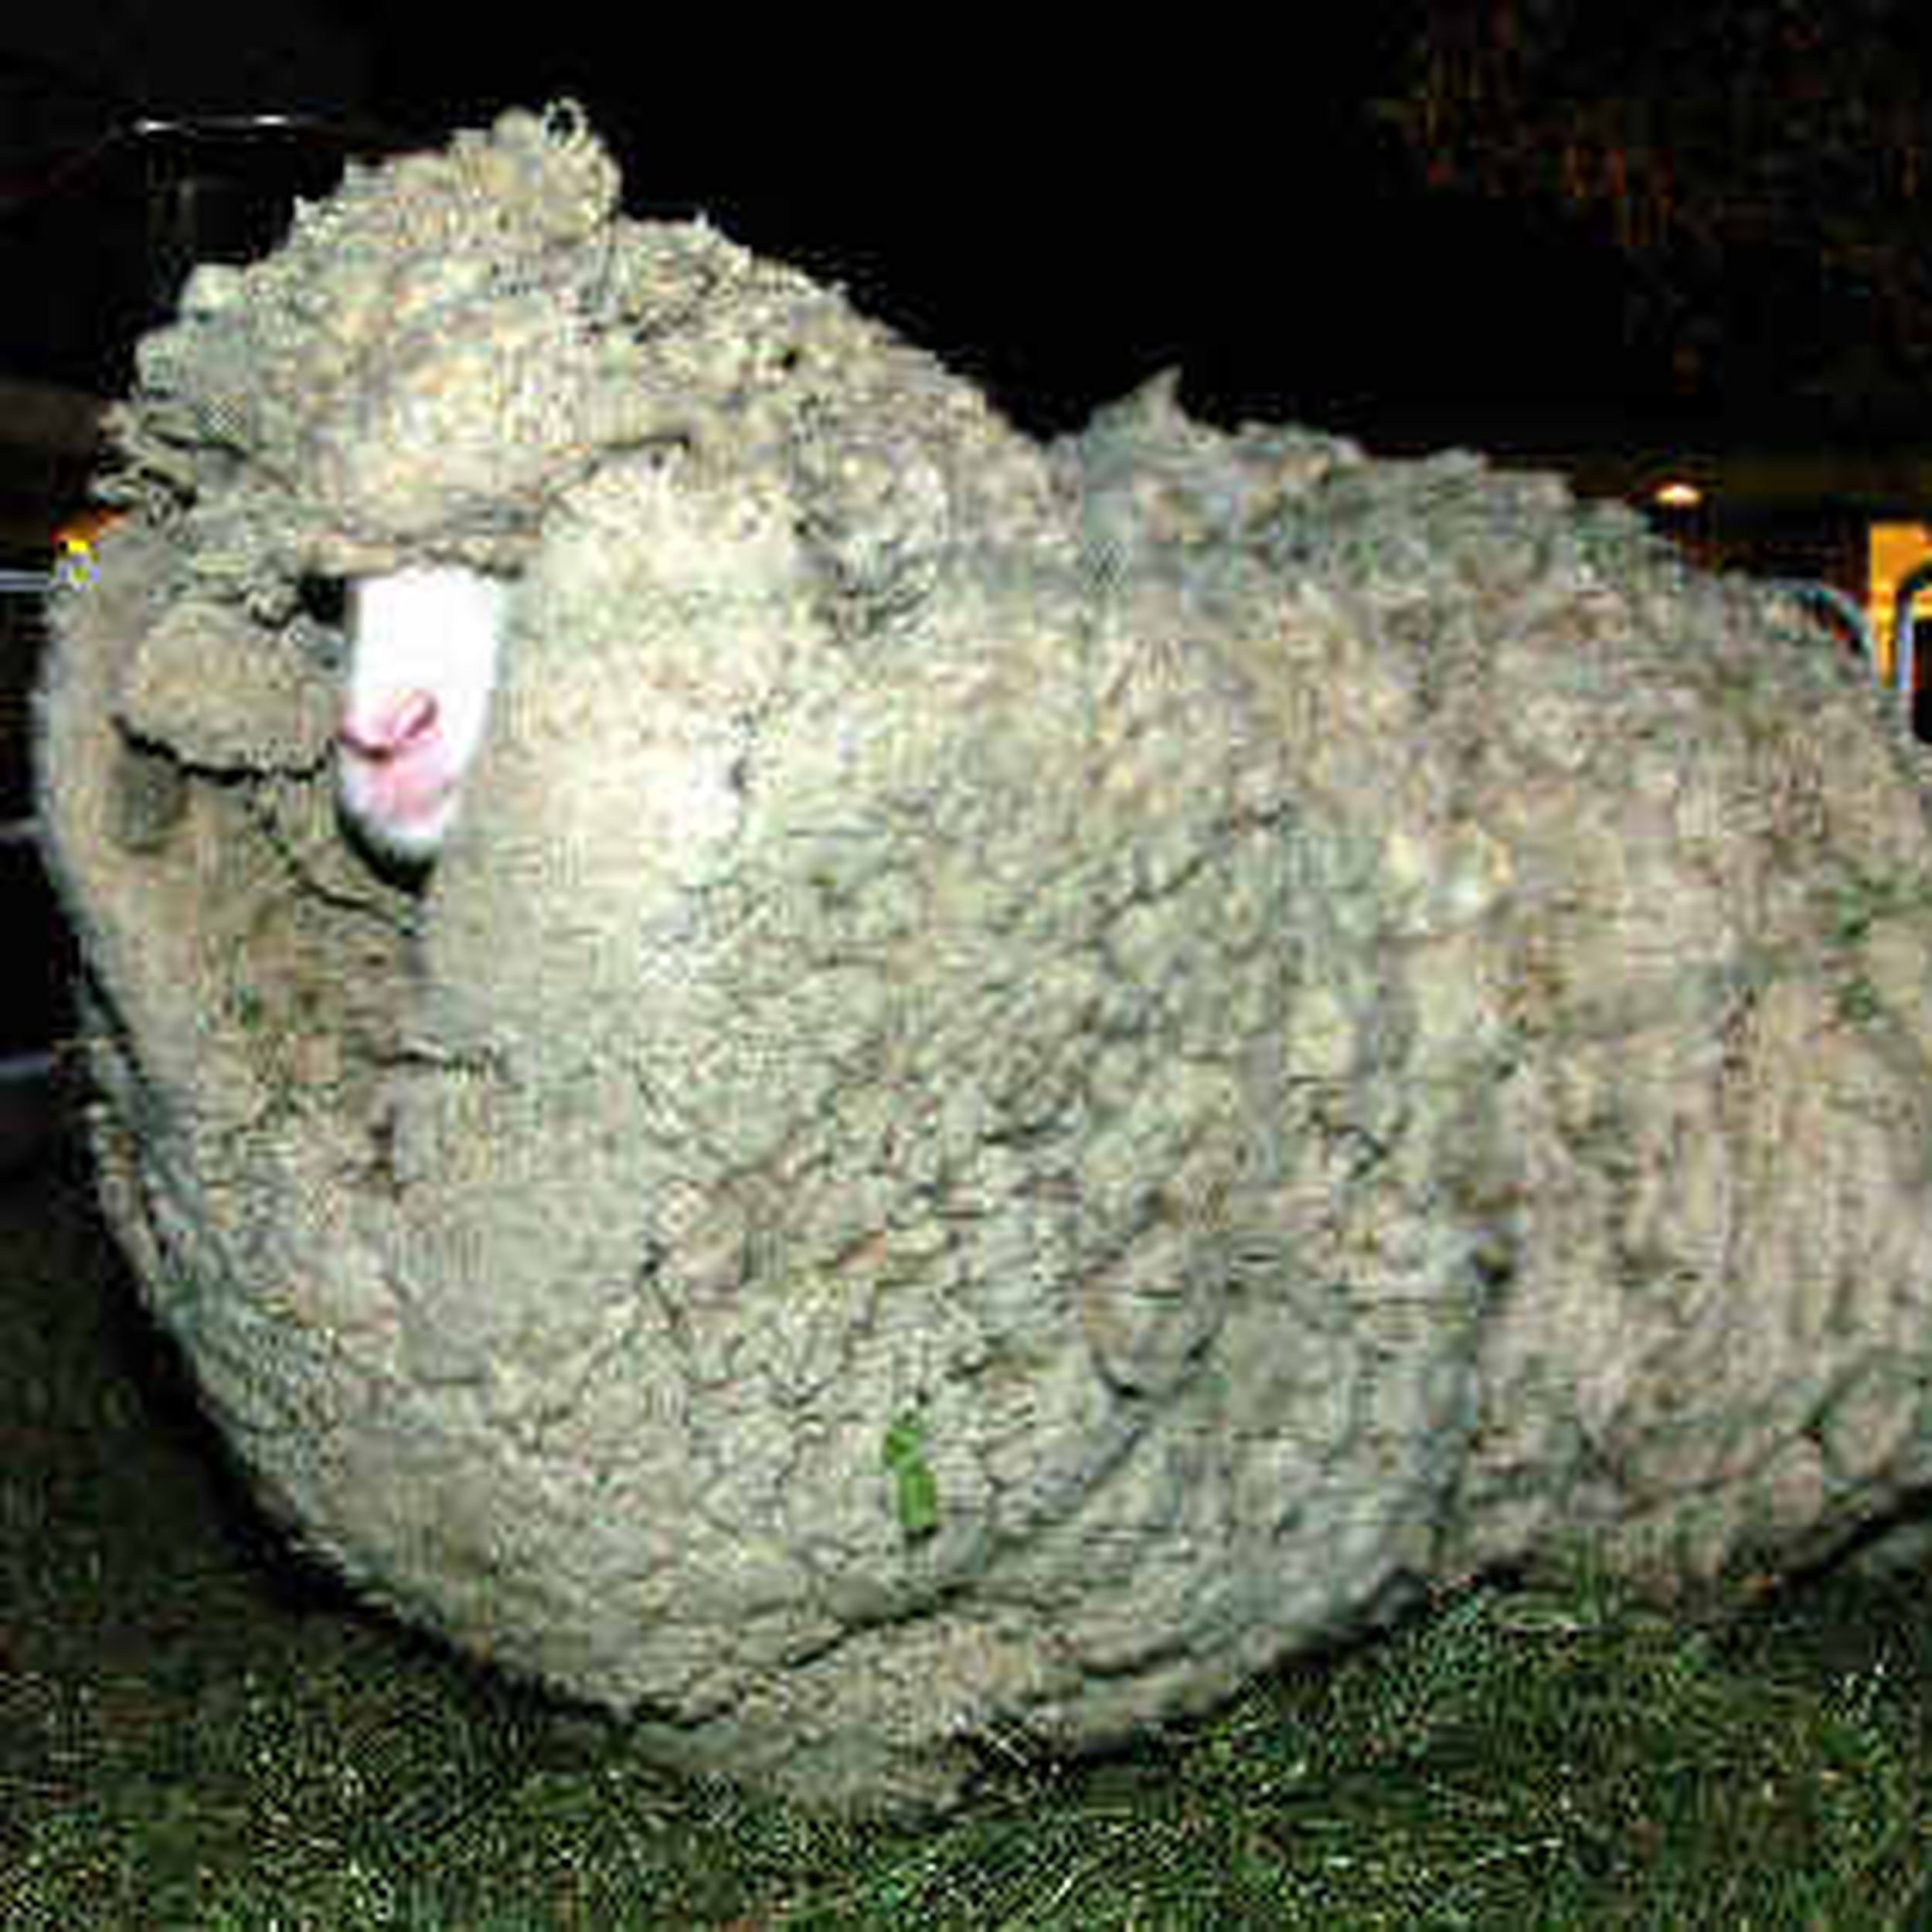 shrek the sheep